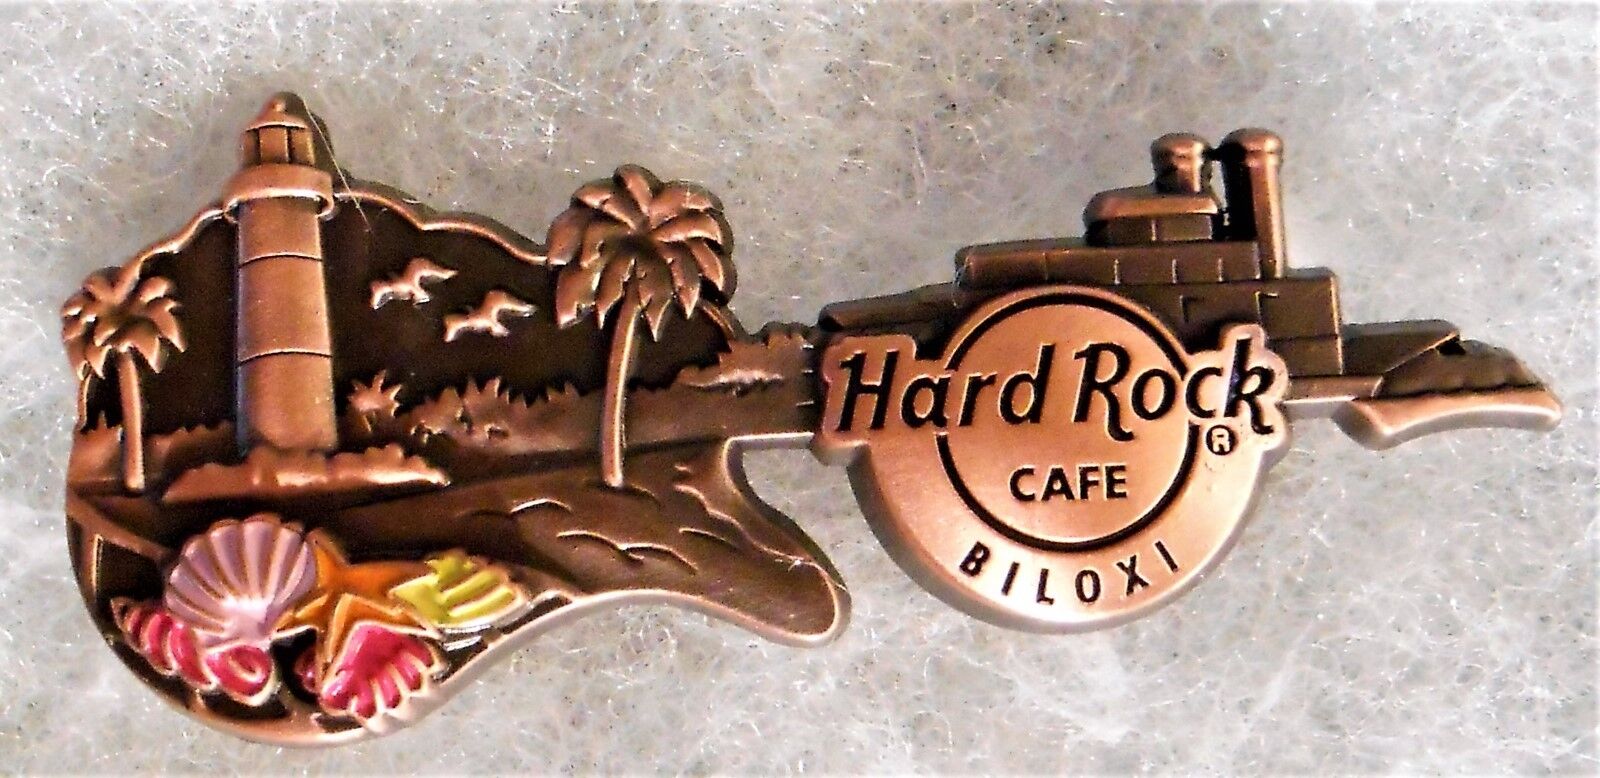 HARD ROCK CAFE BILOXI 3D BRONZE SKYLINE GUITAR SERIES W/ LIGHTHOUSE PIN # 94480